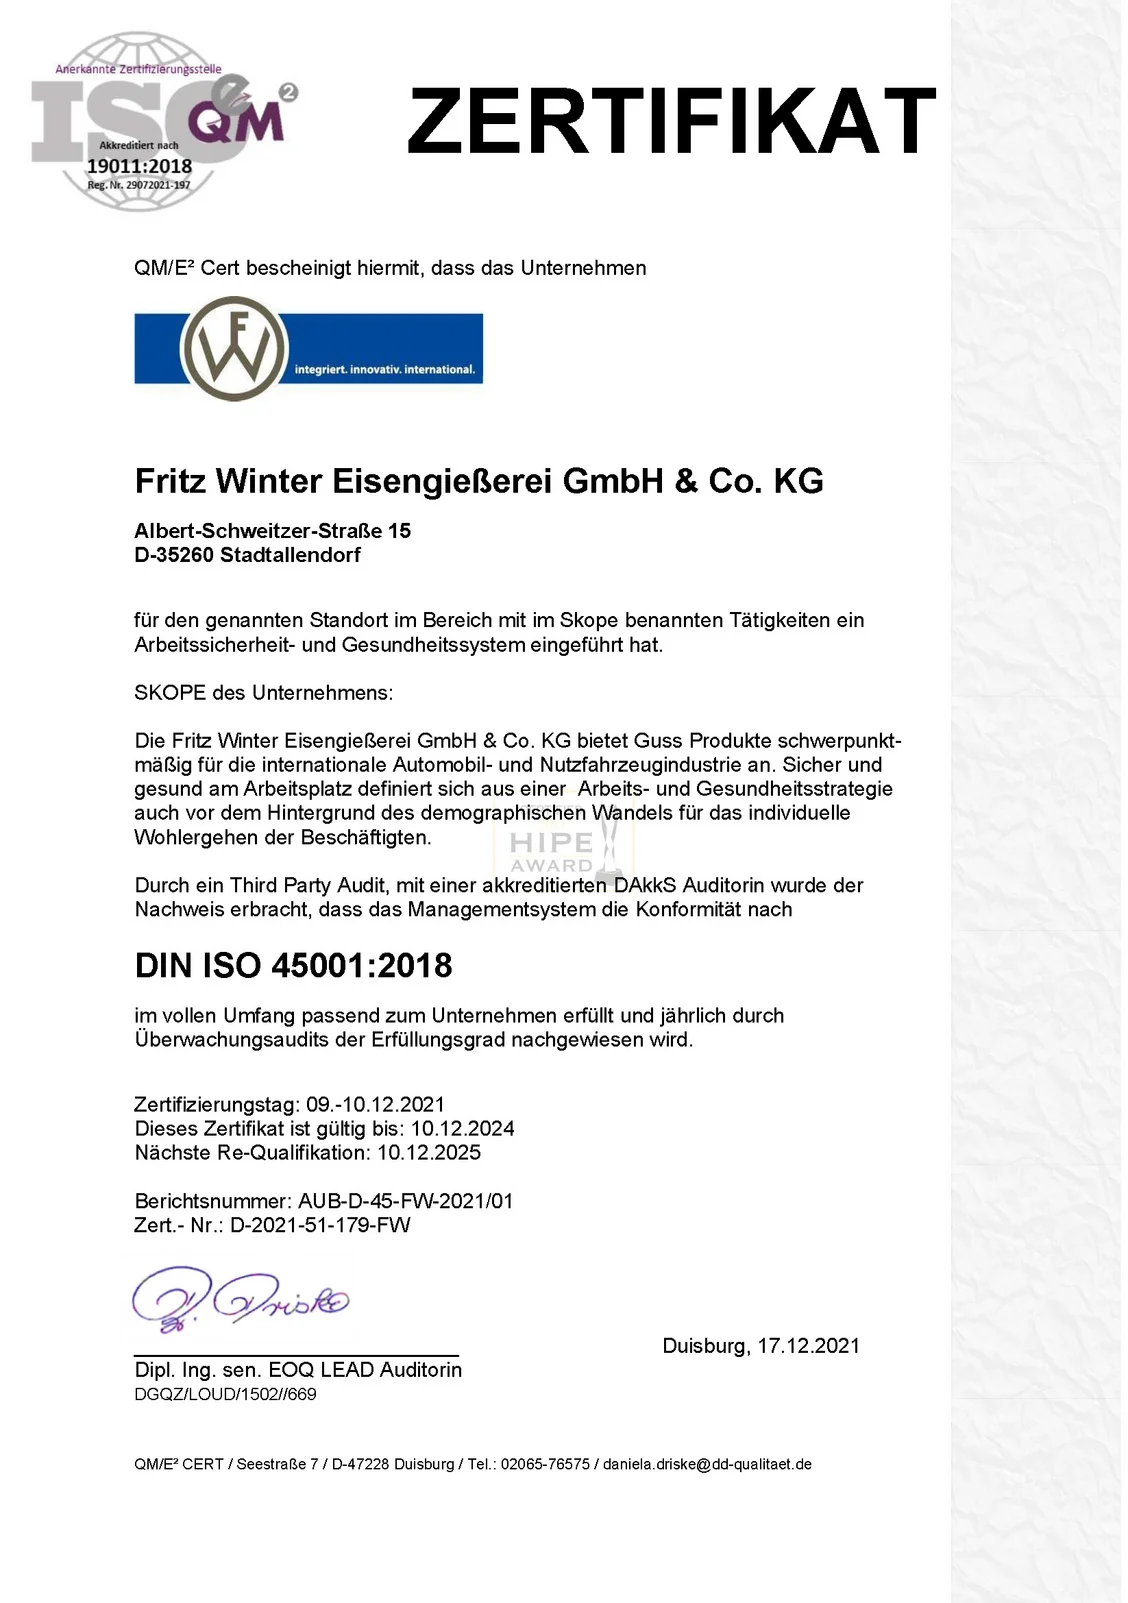 news_erstzertifizierung_iso45001_zertifikat